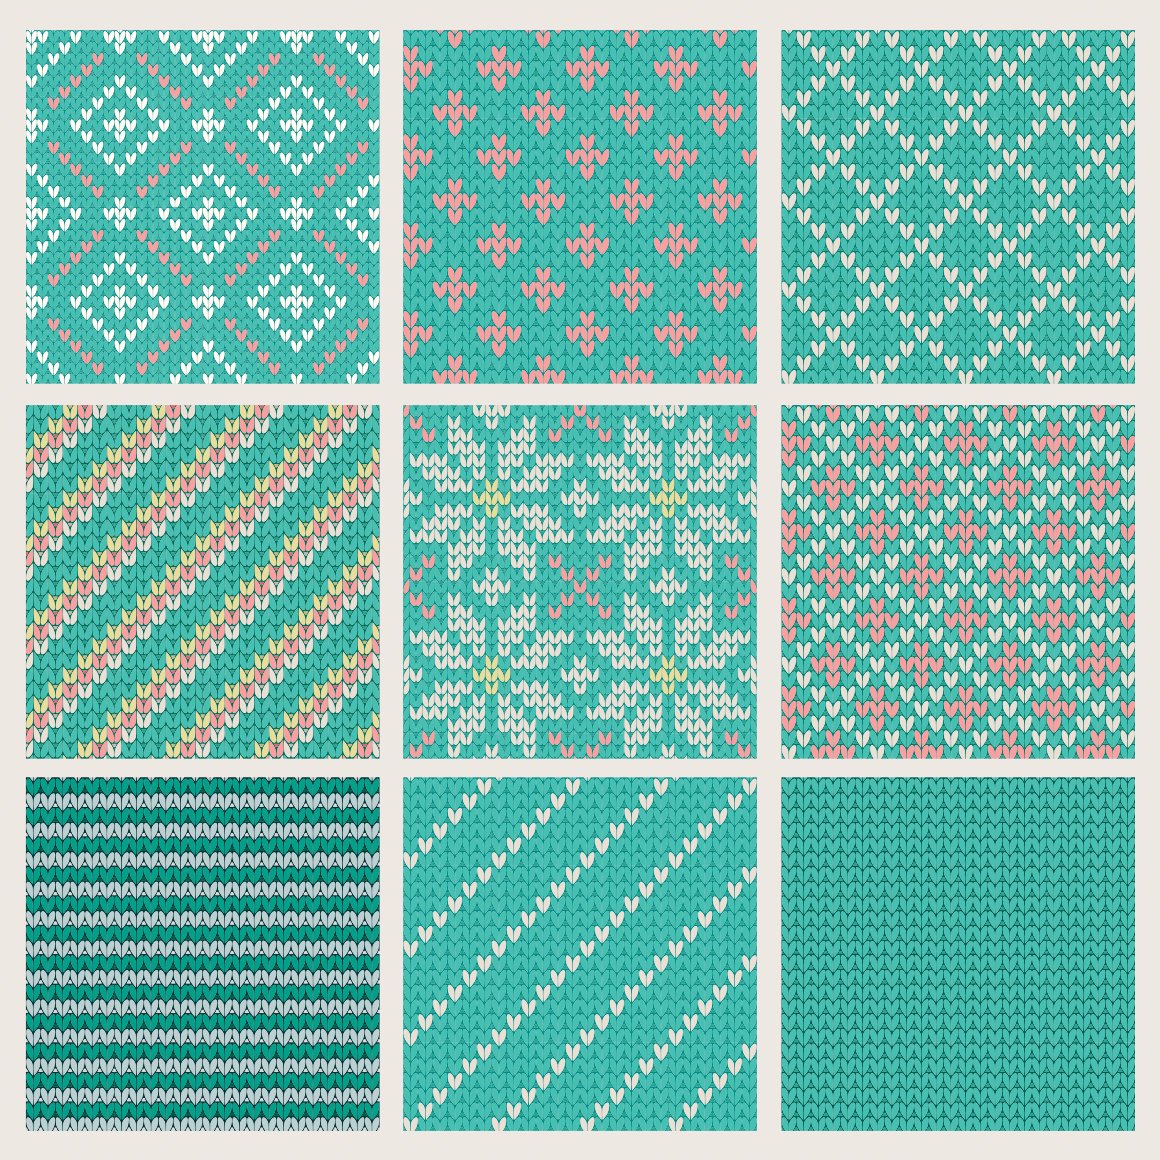 30套针织毛线无缝隙图案纹理背景矢量设计素材 30 seamless knit